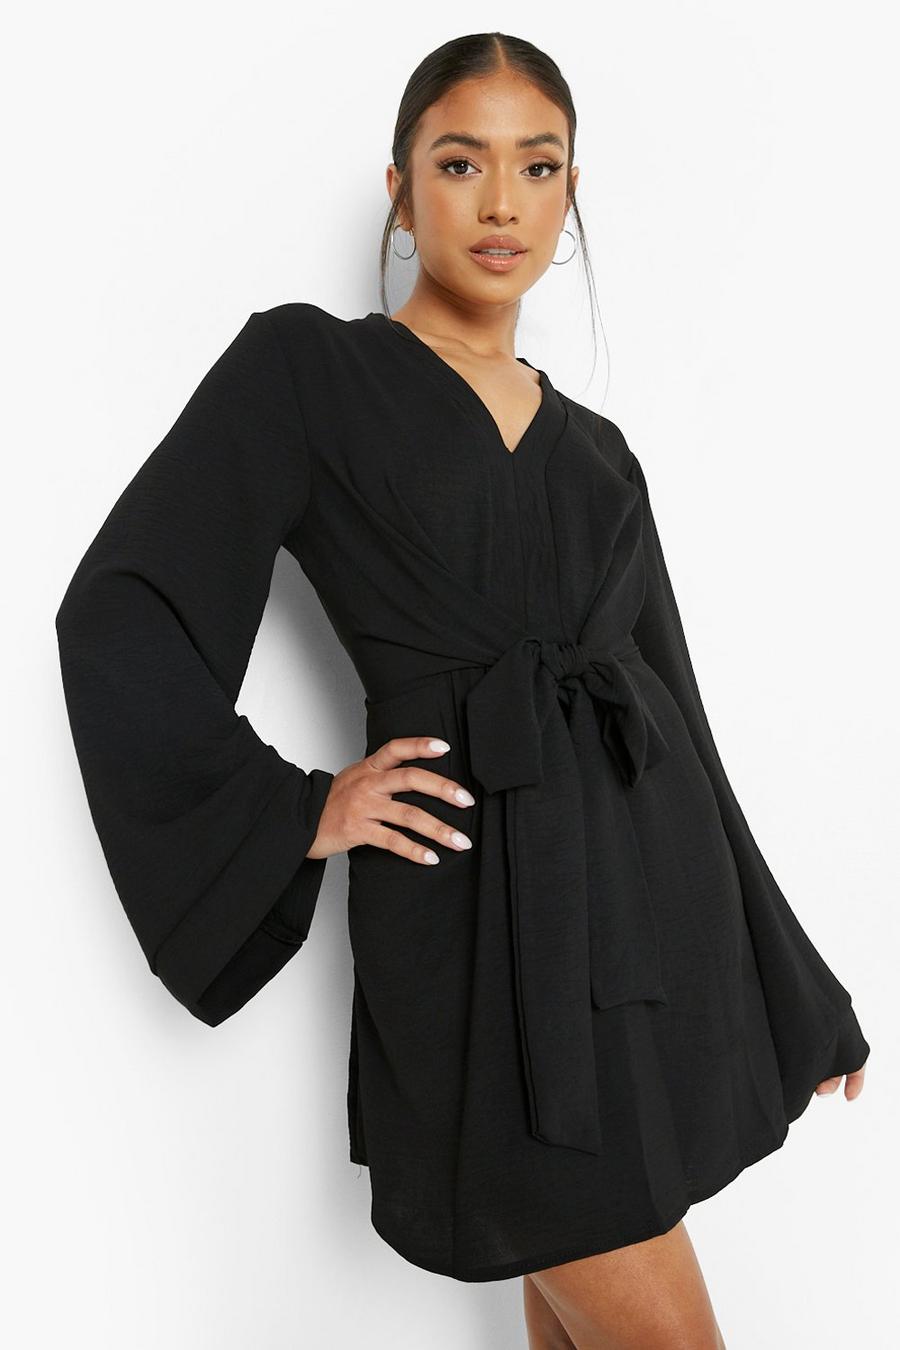 שחור שמלת סקייטר עם קשירה בחזית ושרוולים מתרחבים, פטיט